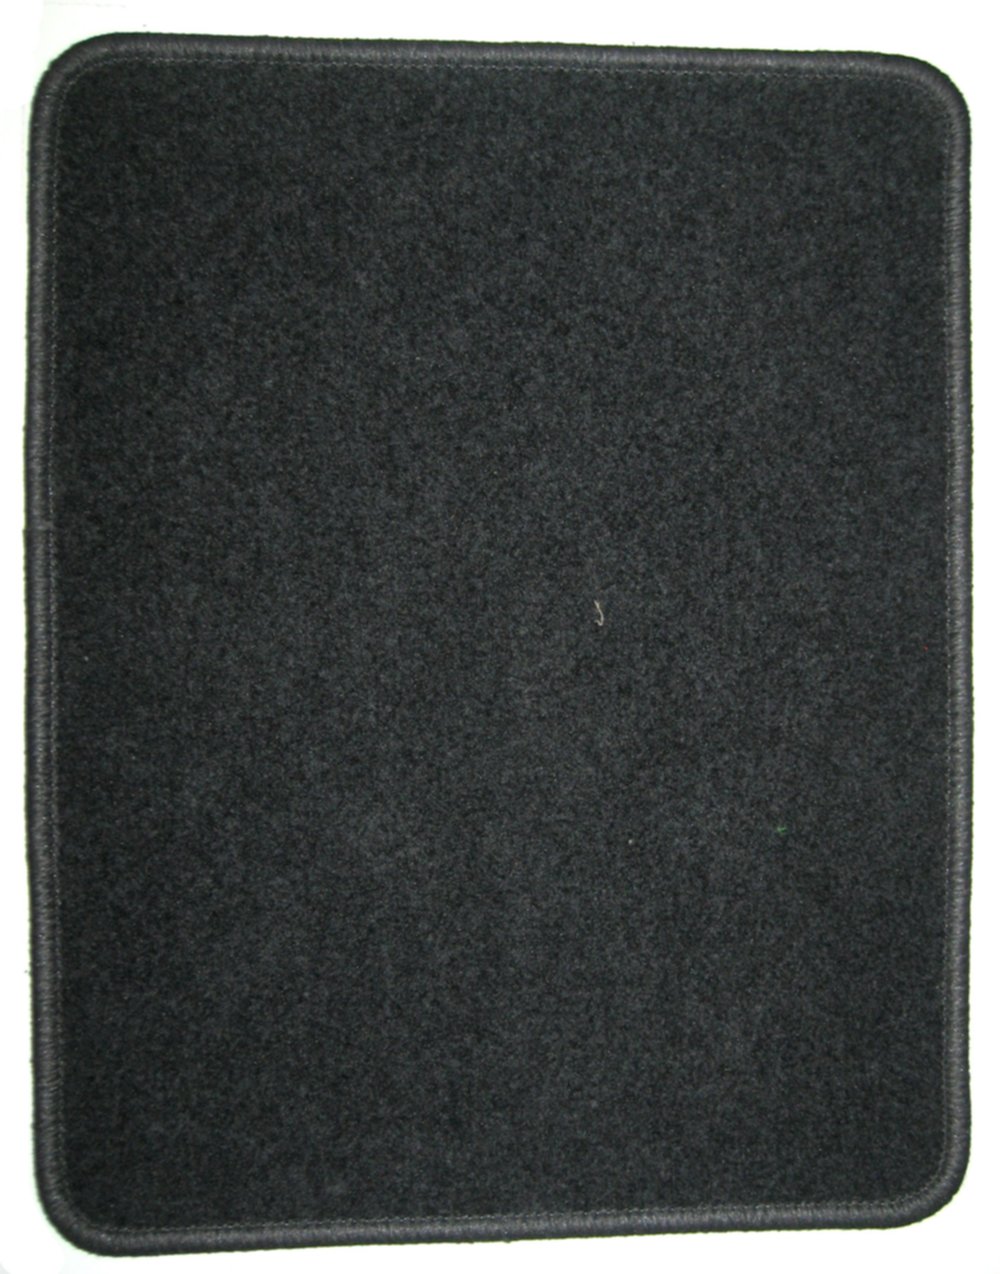 Tapis moquette textile 50 x 40 cm, bords gris - CARLINEA